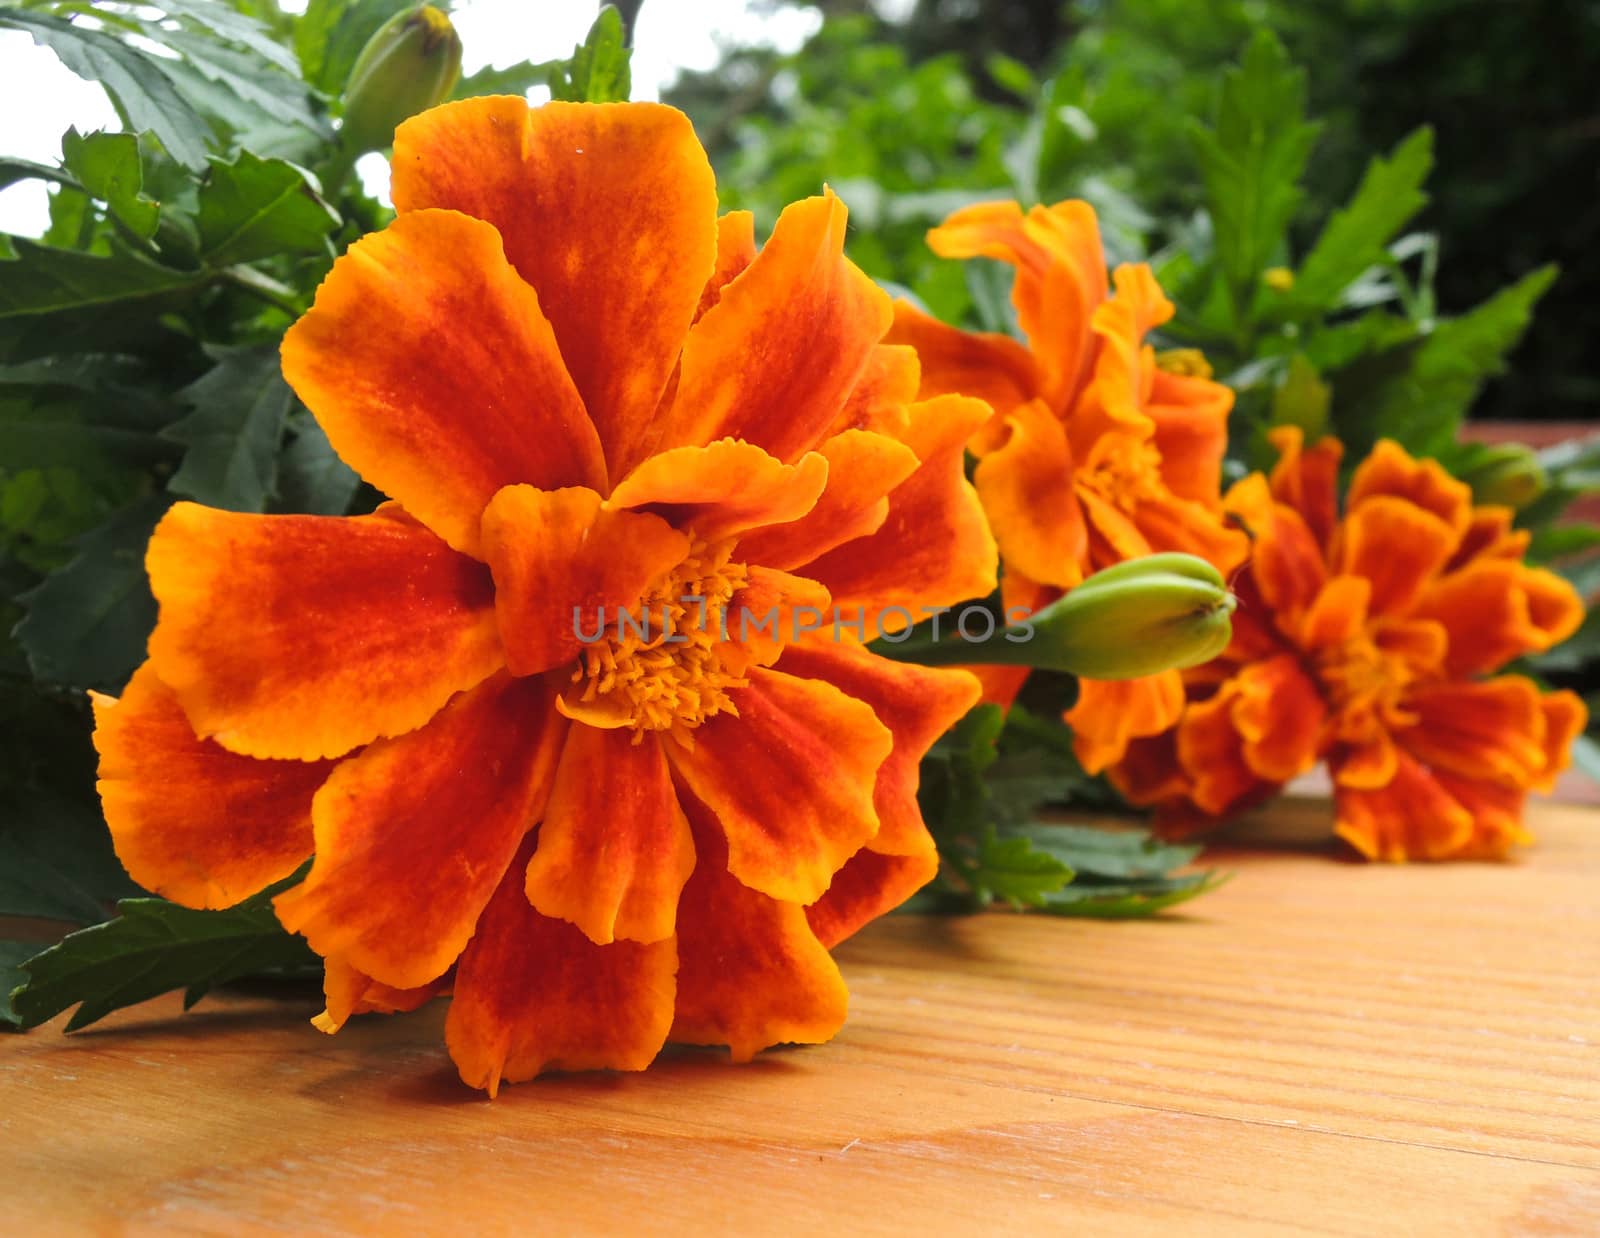 Marigold flower in garden by MalyDesigner